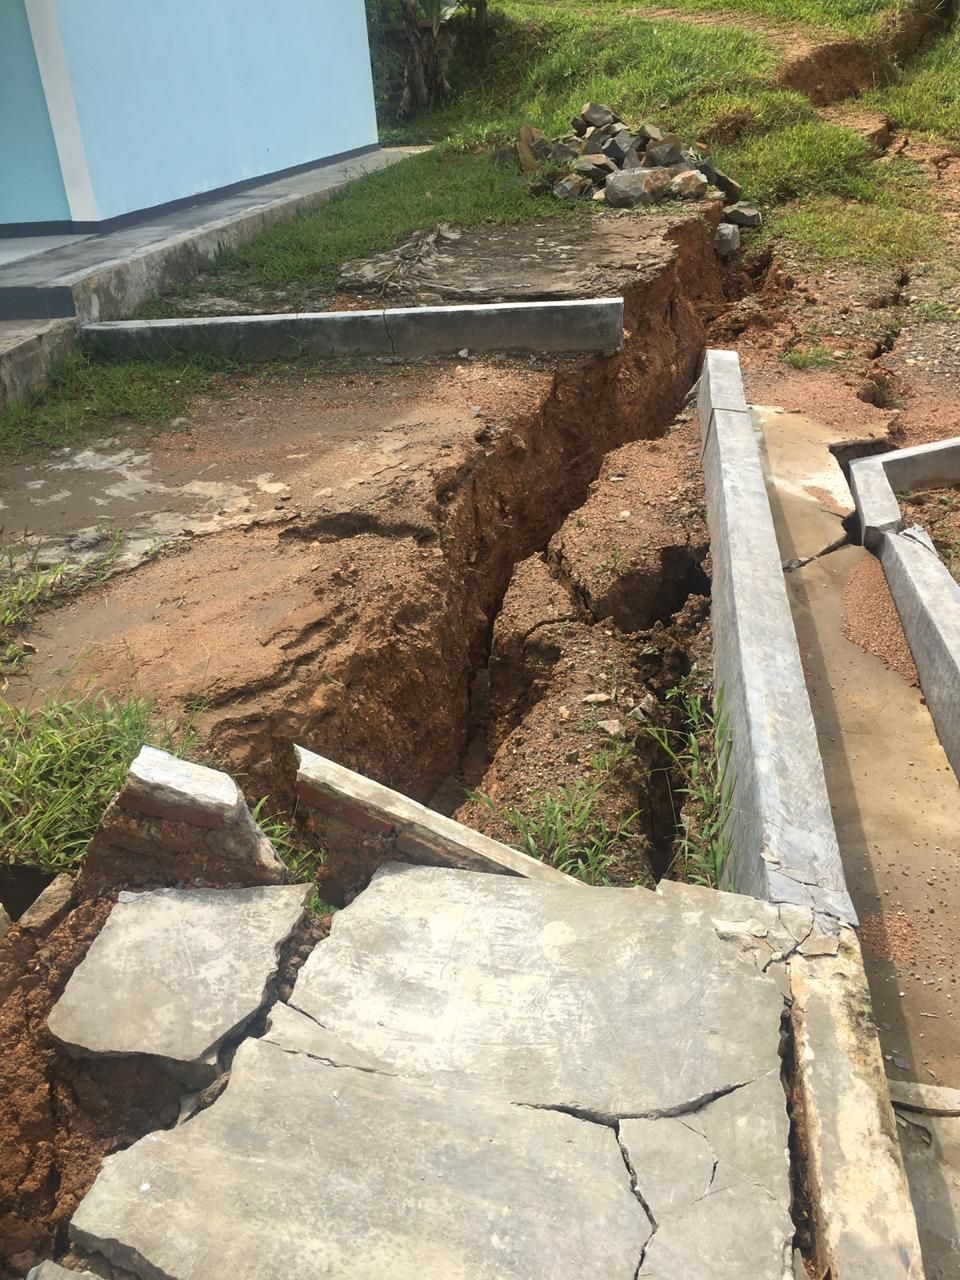 SMAN3 Cibeber Kabupaten Lebak yang mengalami kerusakan akibat pergerakan tanah dan longsor setelah hujan lebat hari Jumat 30 Oktober 2020